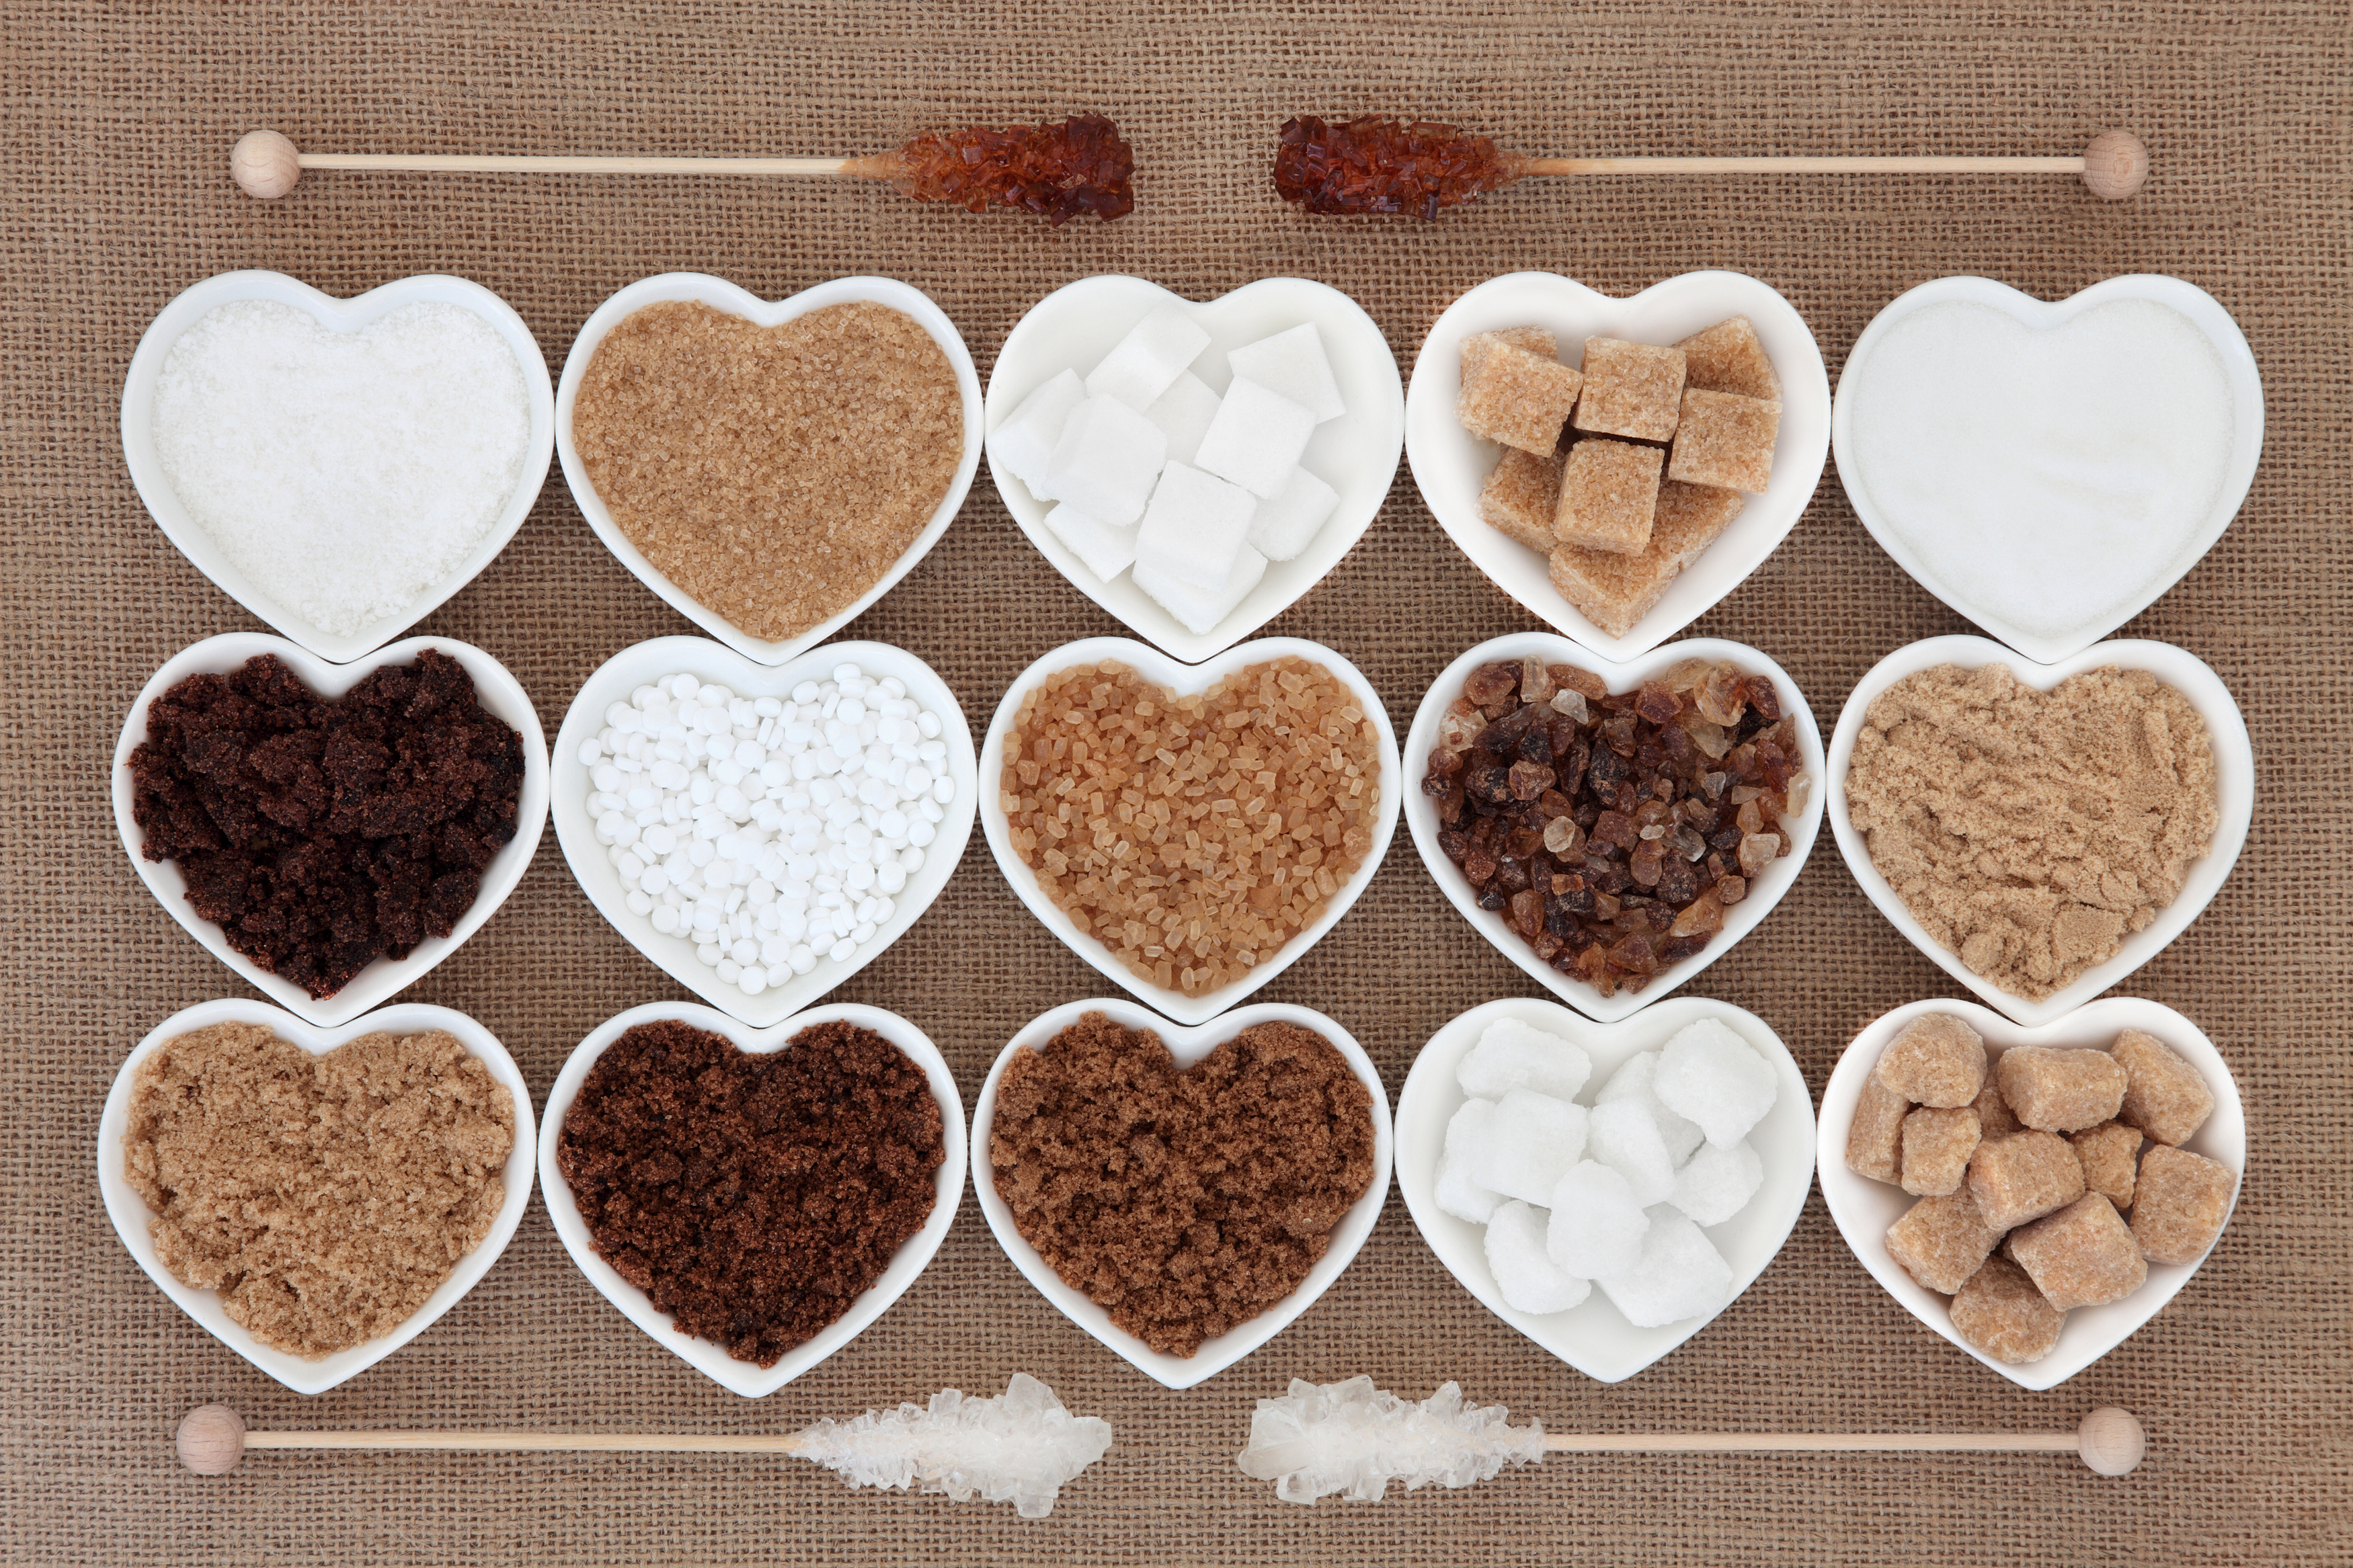 Zucker, Zuckeraustauschstoffe, Süßstoffe & Co. – was ist sinnvoll?